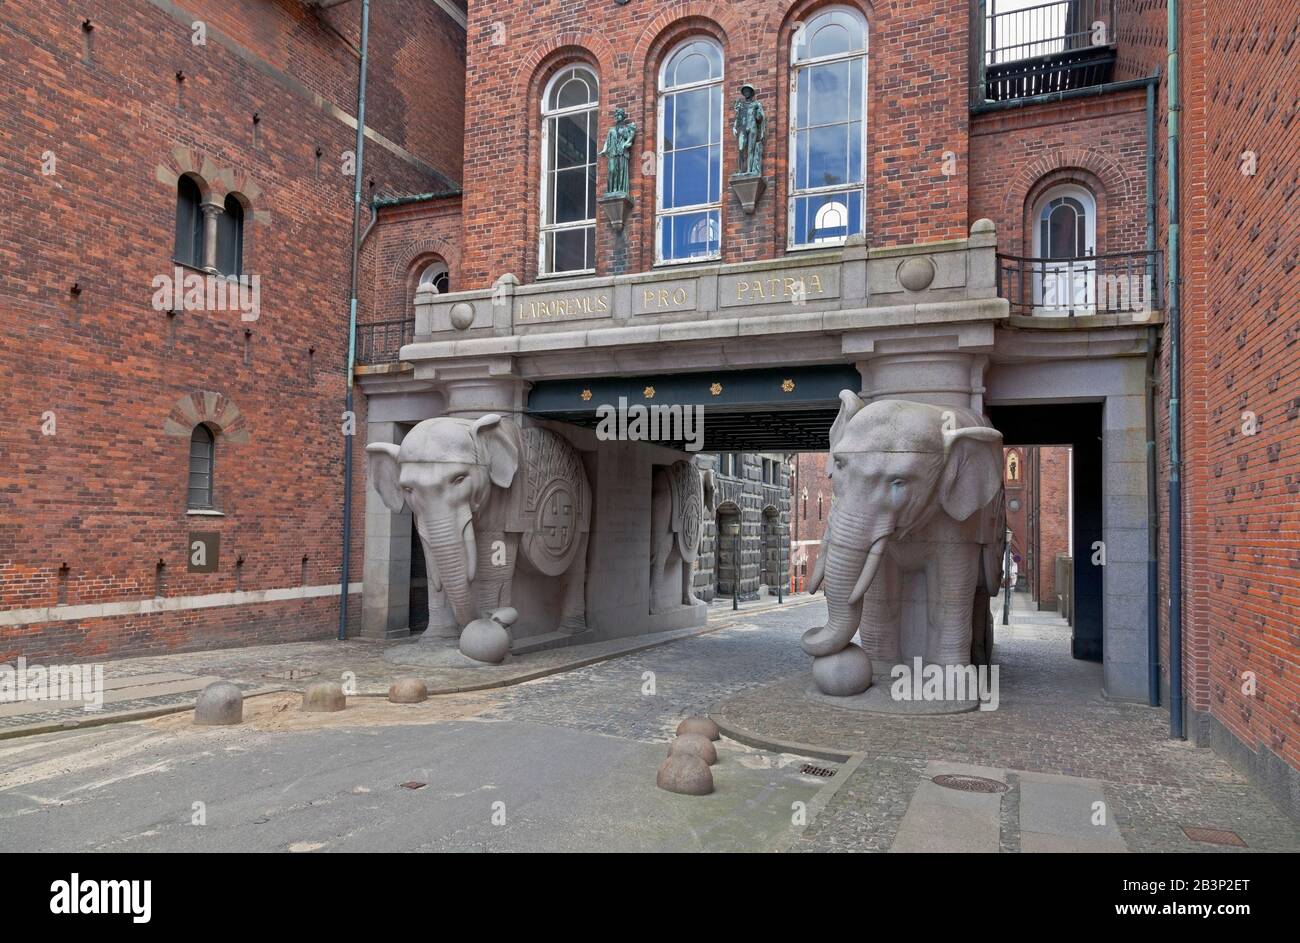 Elefantporten, la porte Elephant, l'entrée historique du côté de Valby à l'ancienne brasserie Carlsberg à Copenhague, Danemark. Banque D'Images